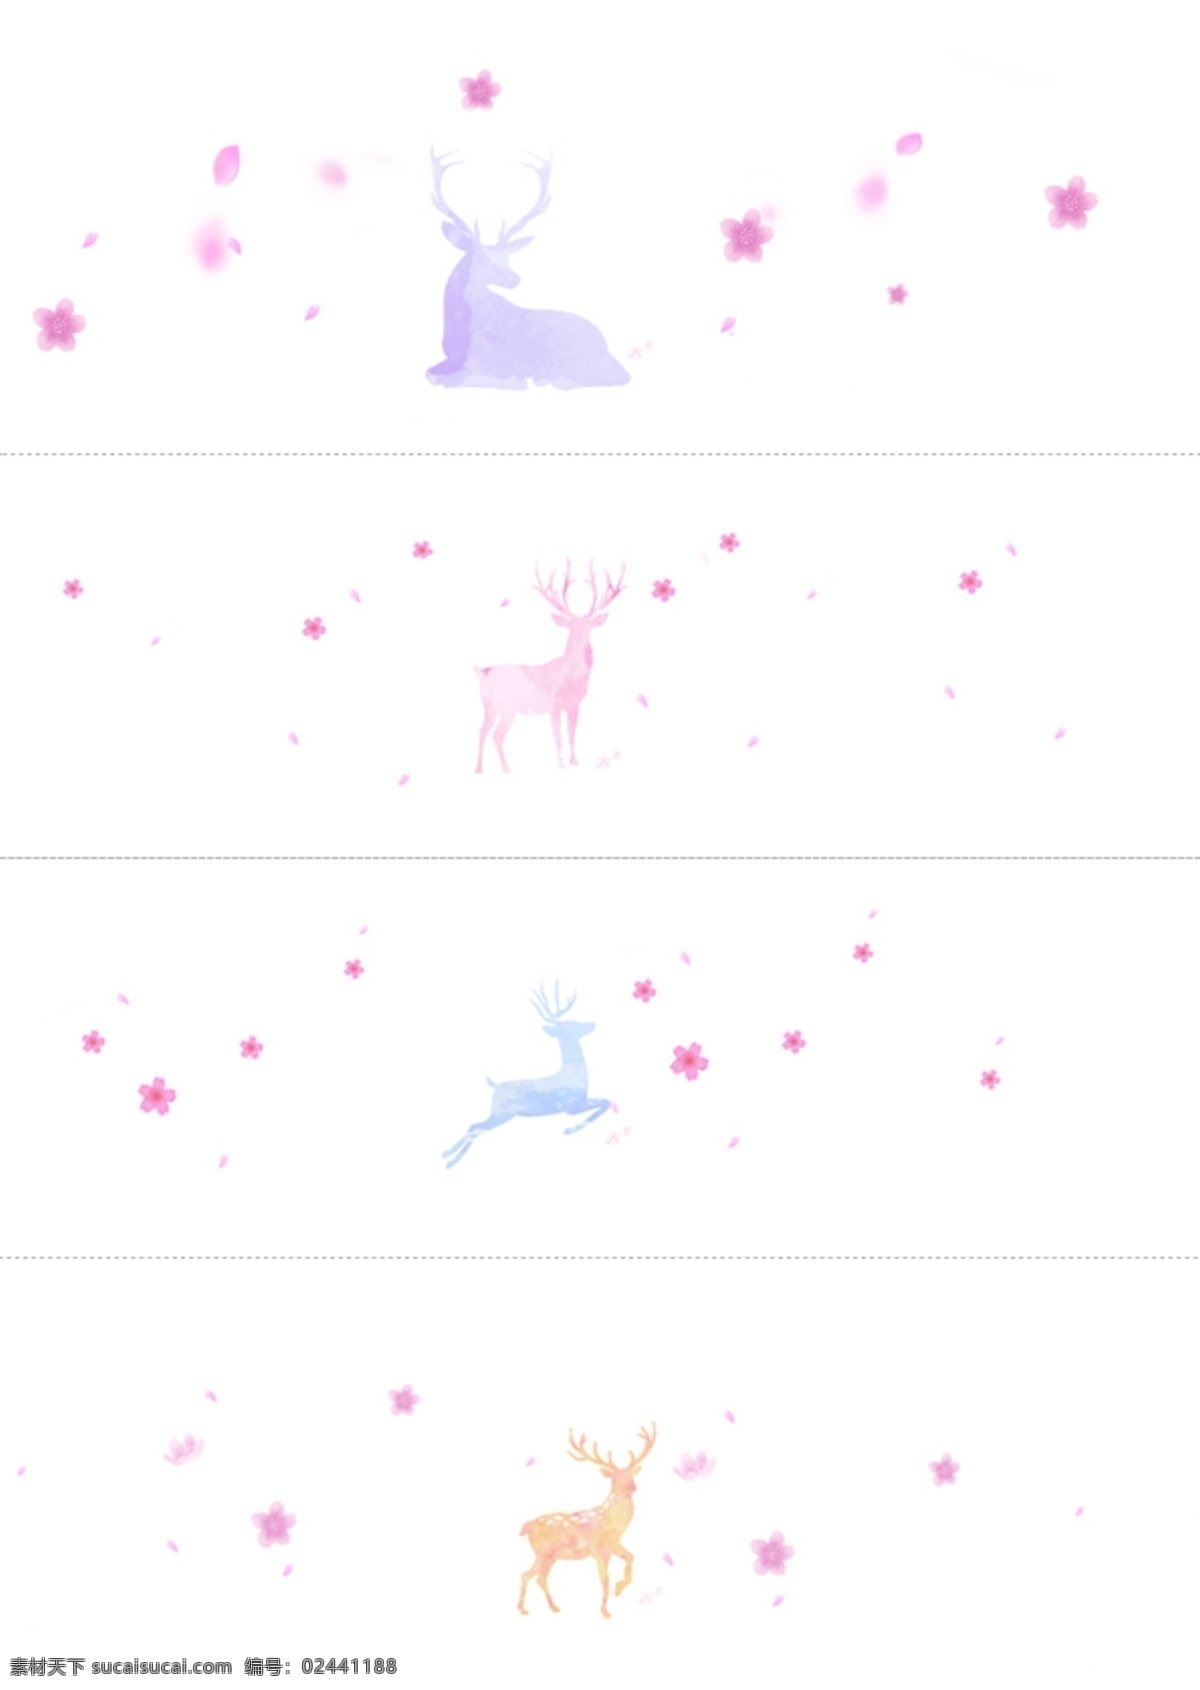 小鹿樱花图片 小鹿 樱花 日本 粉色 麋鹿